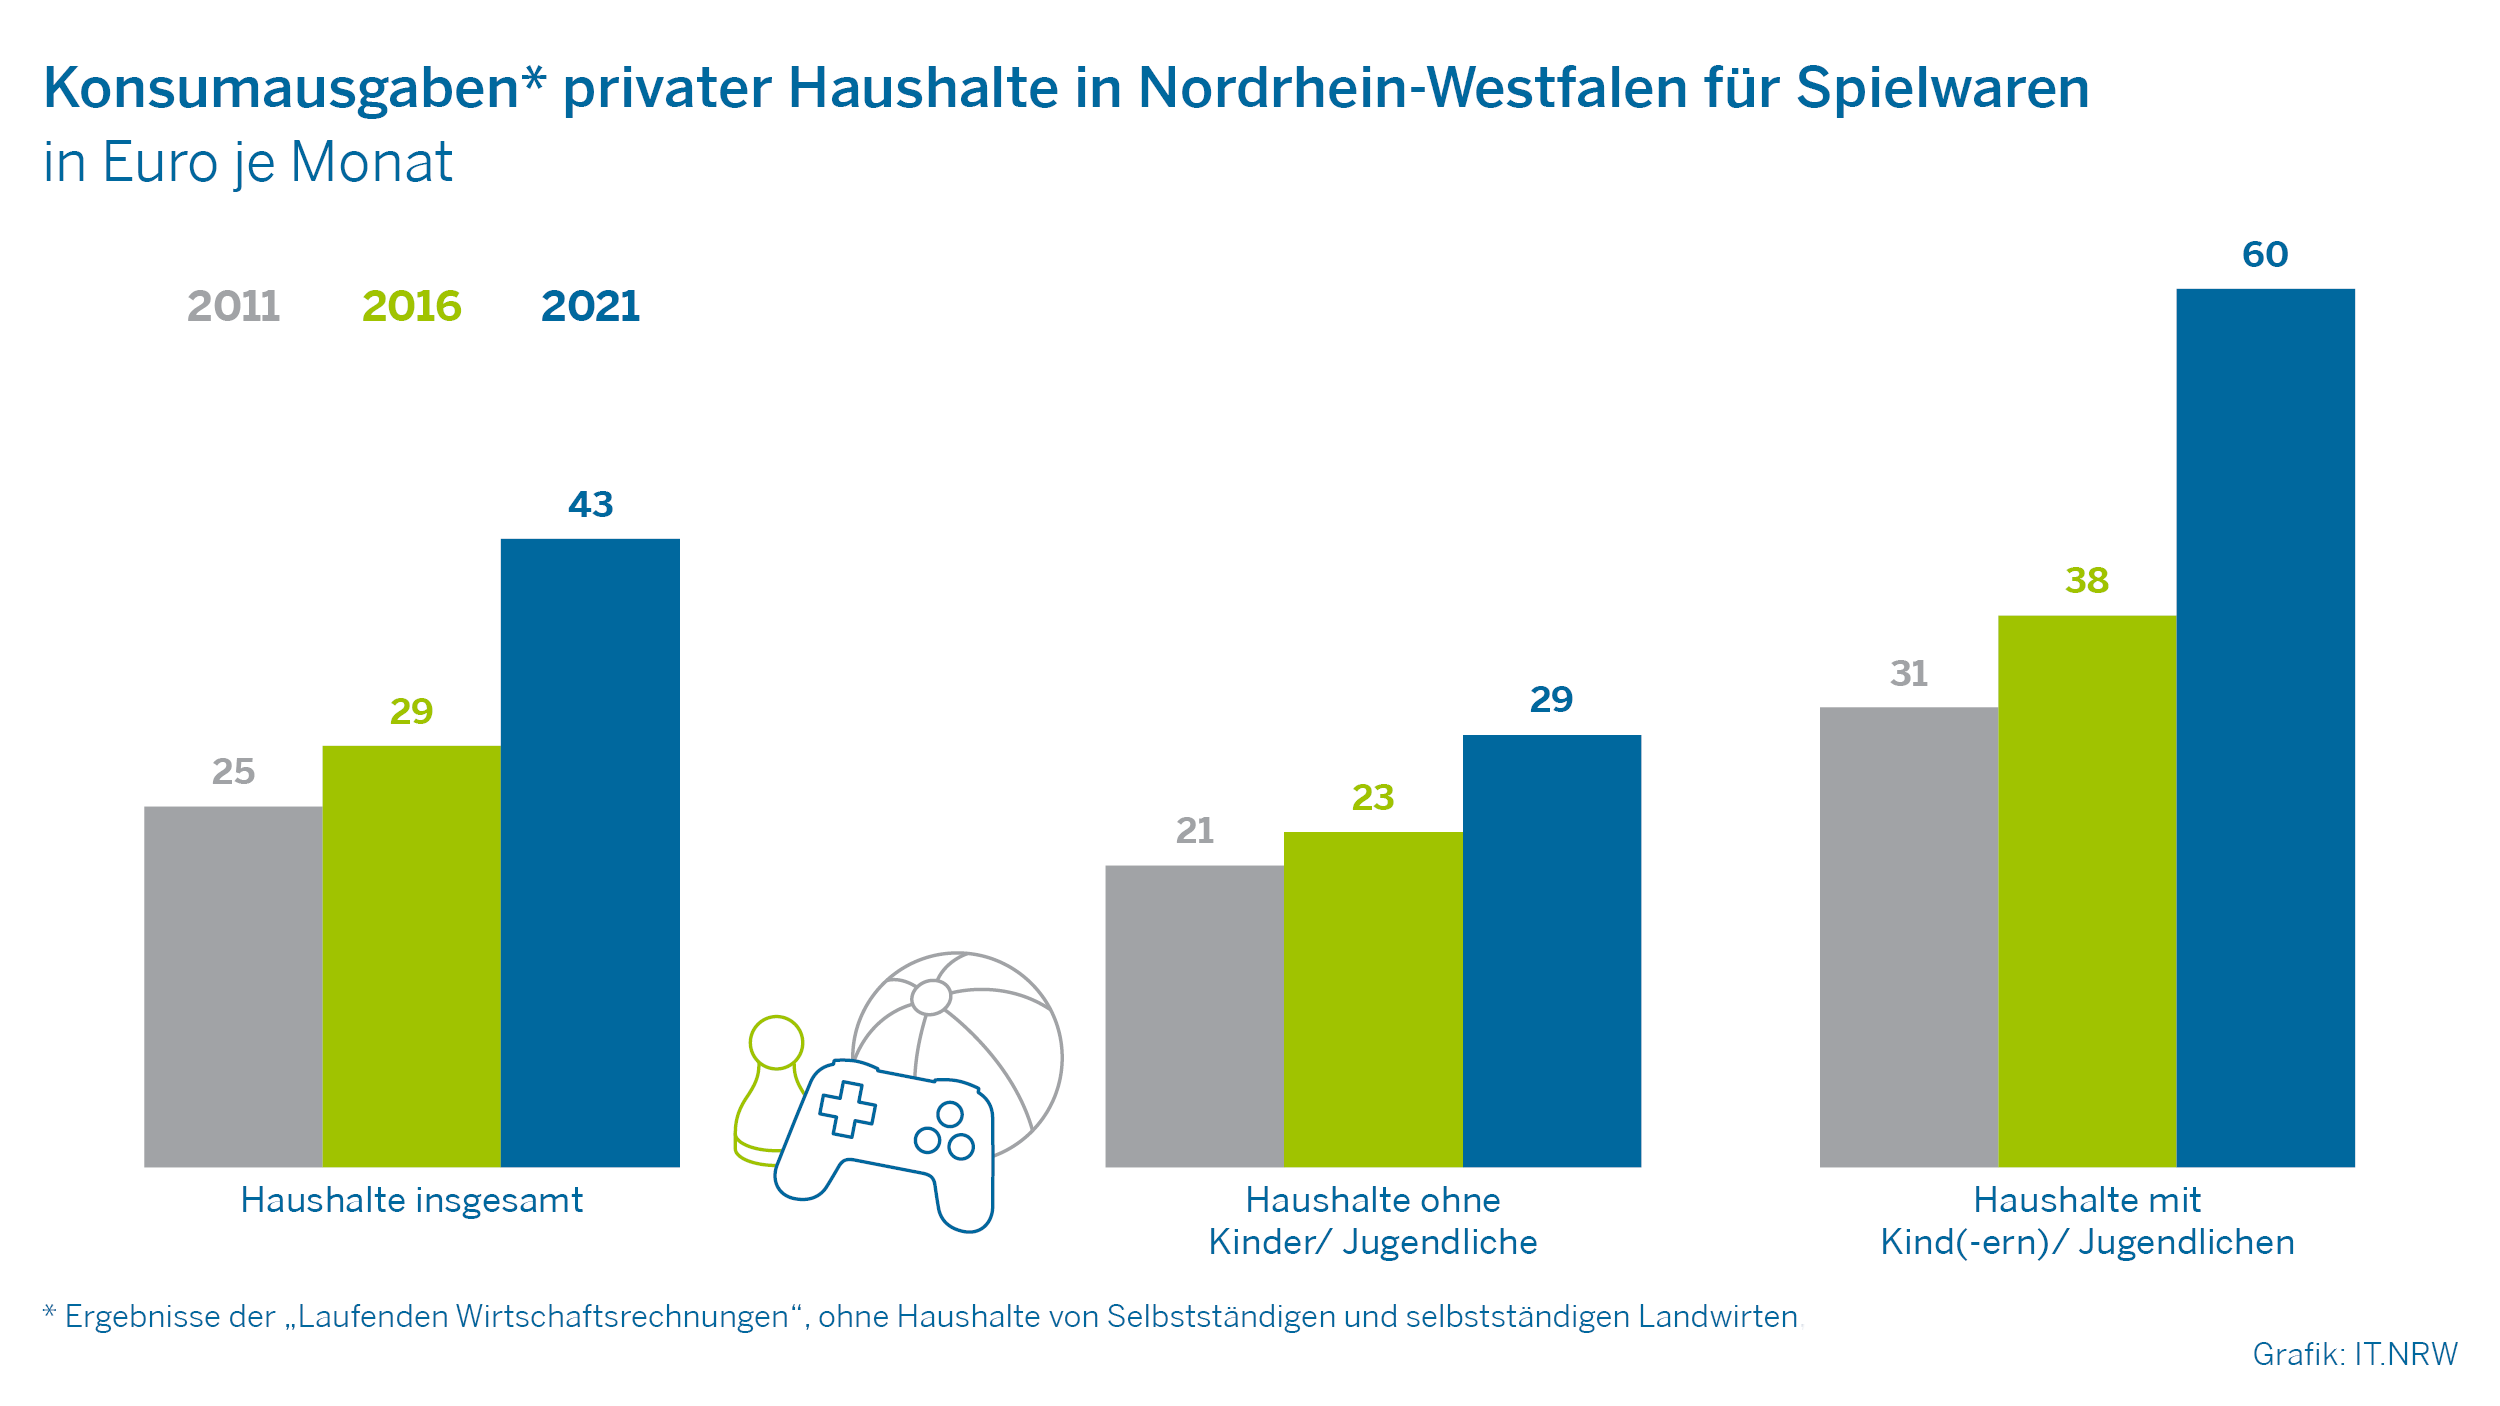 Konsumausgaben privater Haushalte in Nordrhein-Westfalen für Spielwaren